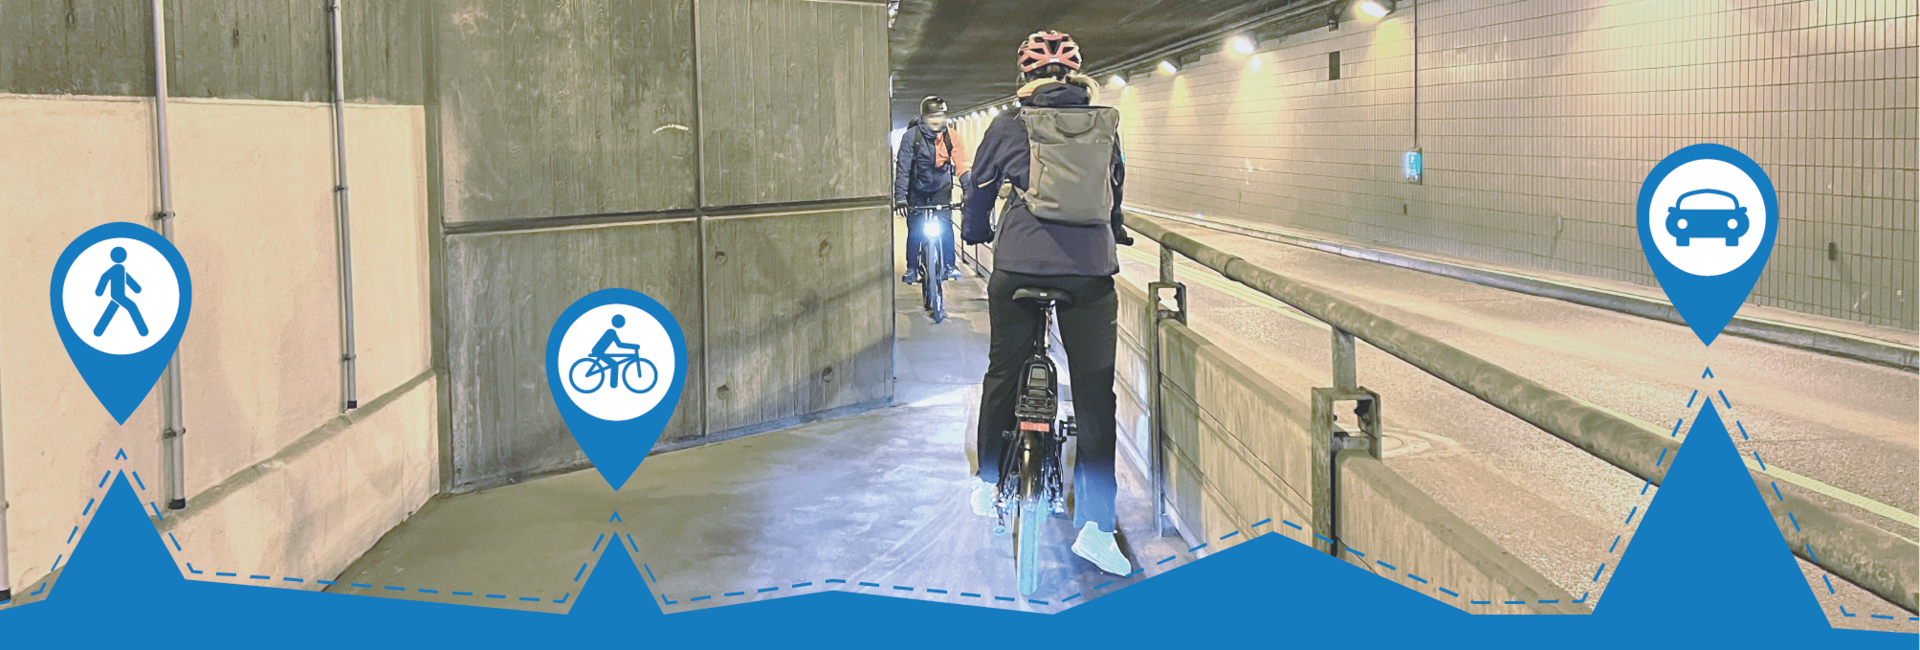 Zwei Fahrradfahrer begegnen sich auf einem sehr schmalen Fahrradweg im Flughafentunnel. Darunter ist in blau eine Zeitlinie eingefügt